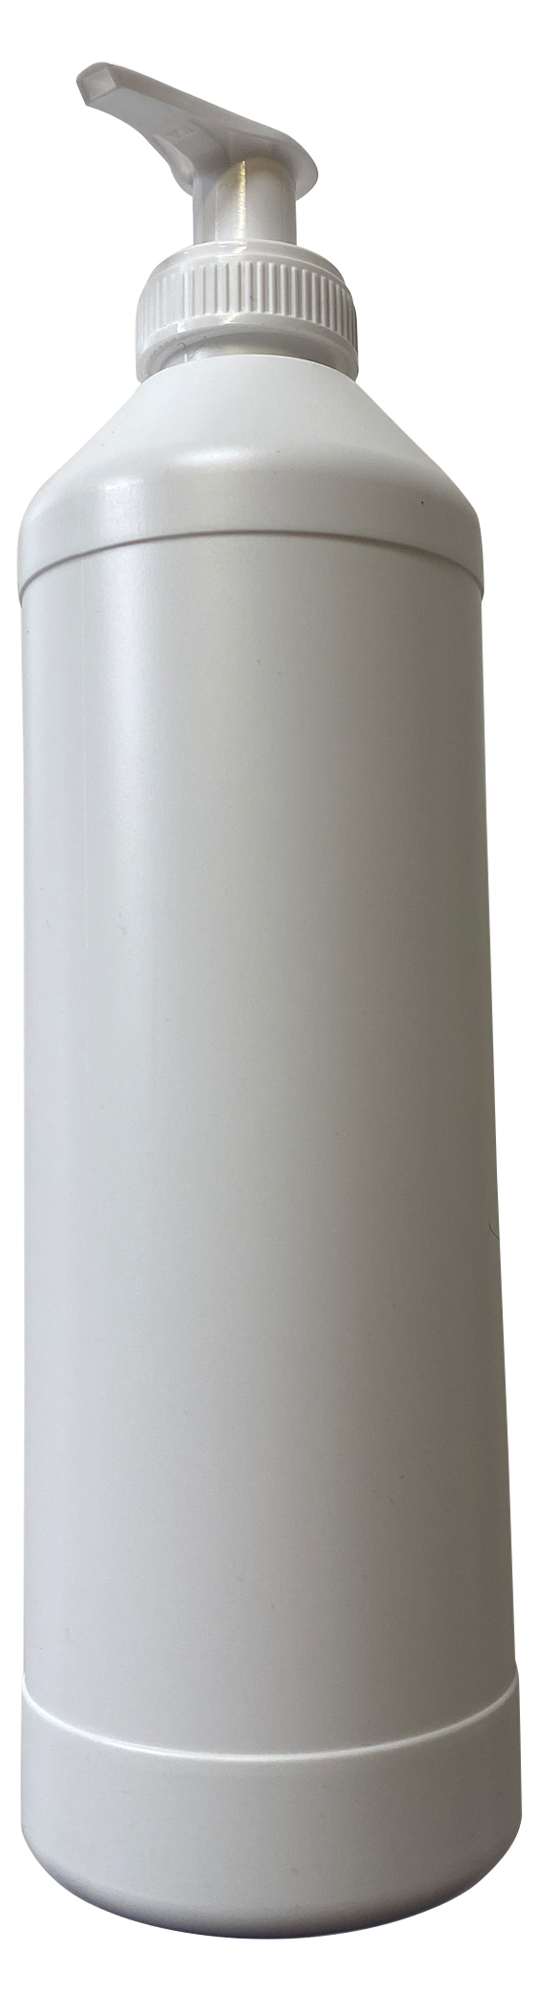 Cremspender für 0,5 L und 1 L Rundflasche mit 28ger Gewinde Hub ca. 1,2 ml  auch zum dosieren